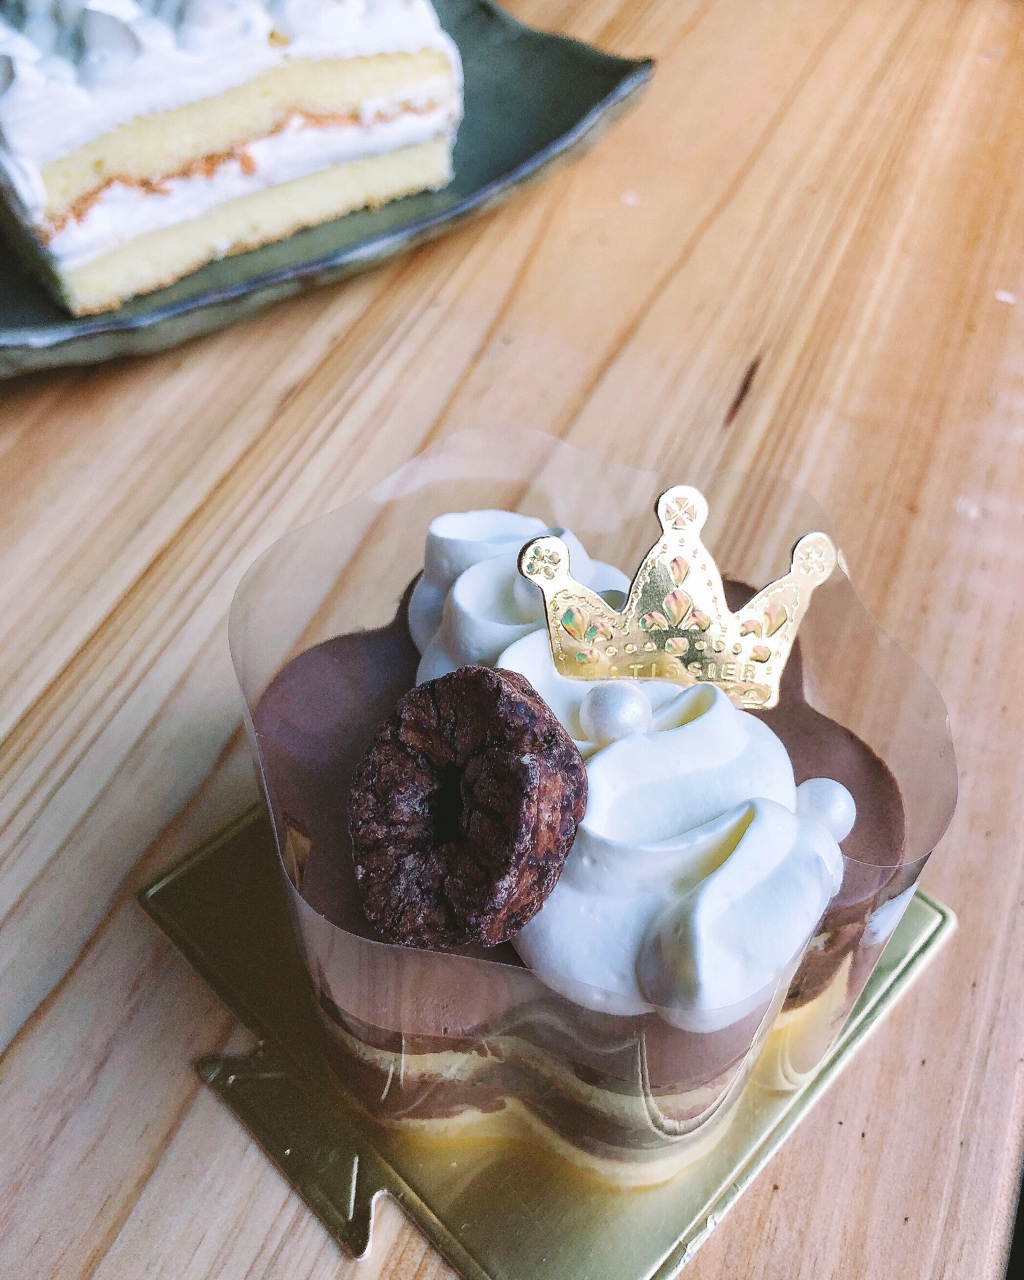 熊谷裕子-巧克力提诺栗子蛋糕